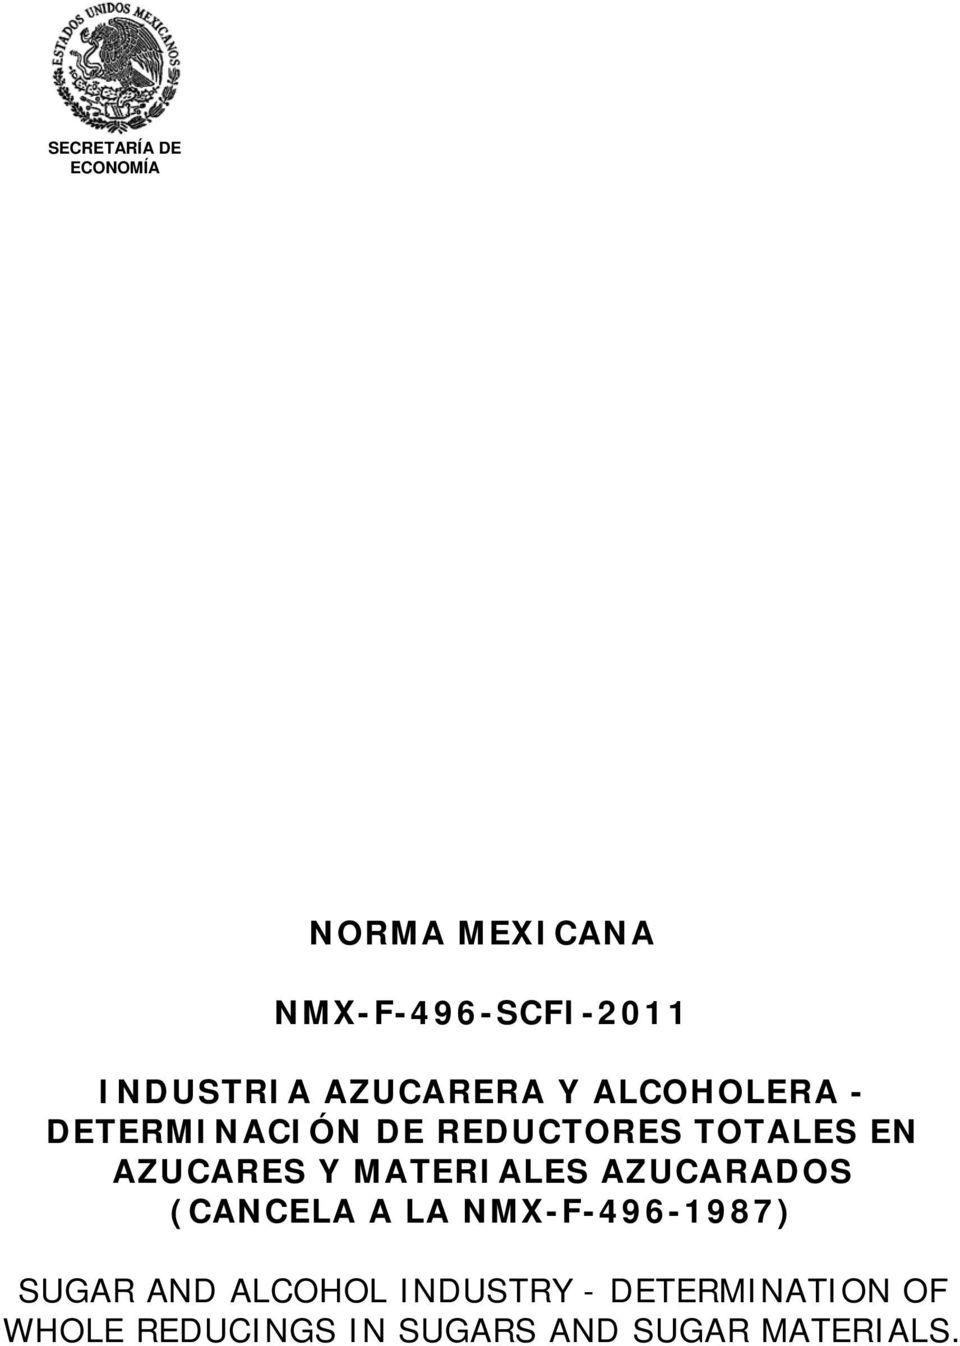 MATERIALES AZUCARADOS (CANCELA A LA NMX-F-496-1987) SUGAR AND